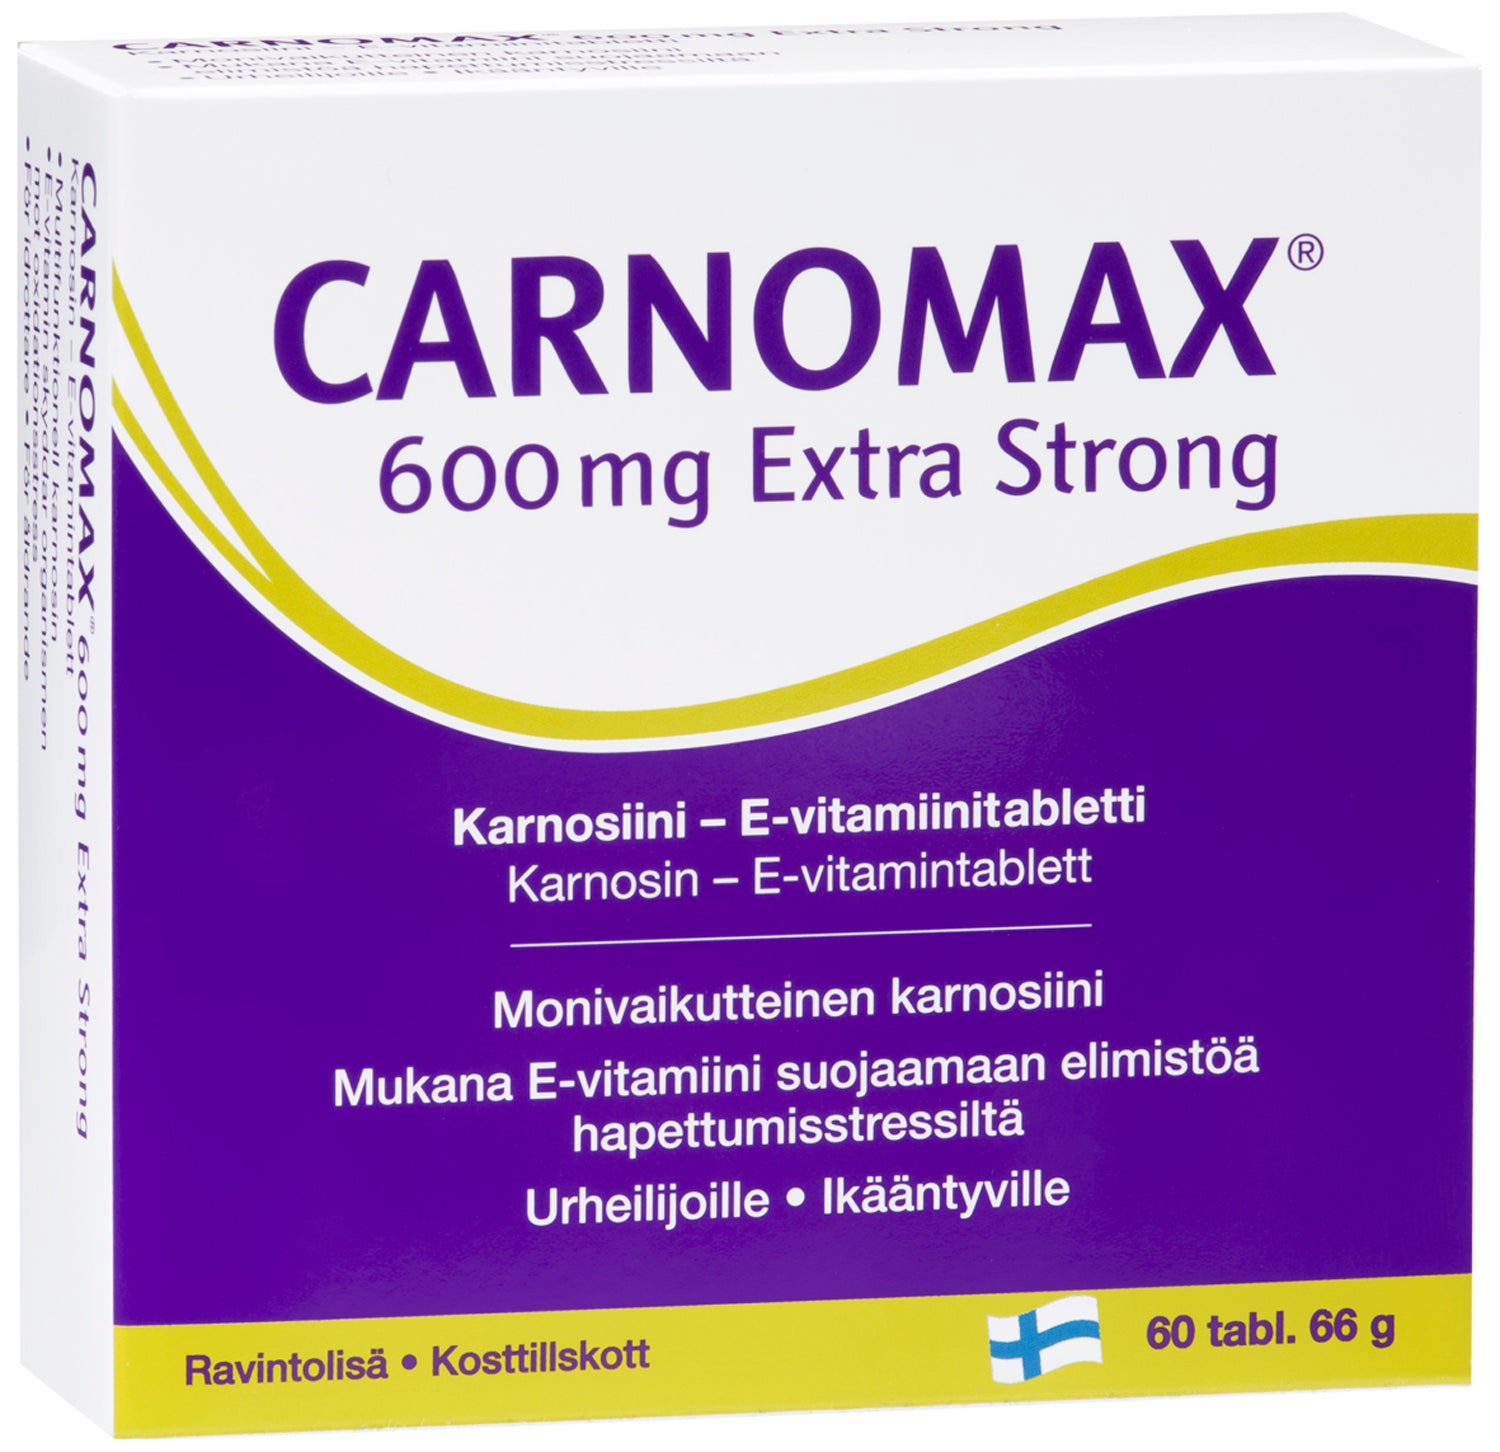 Carnomax® 600 mg Extra Strong 60 tabl. Karnosiini-E-vitamiinitabletit. Monivaikutteinen karnosiini. Mukana E-vitamiini suojaamaan elimistöä hapettumisstressiltä. Tukee aktiivista elämäntapaa.